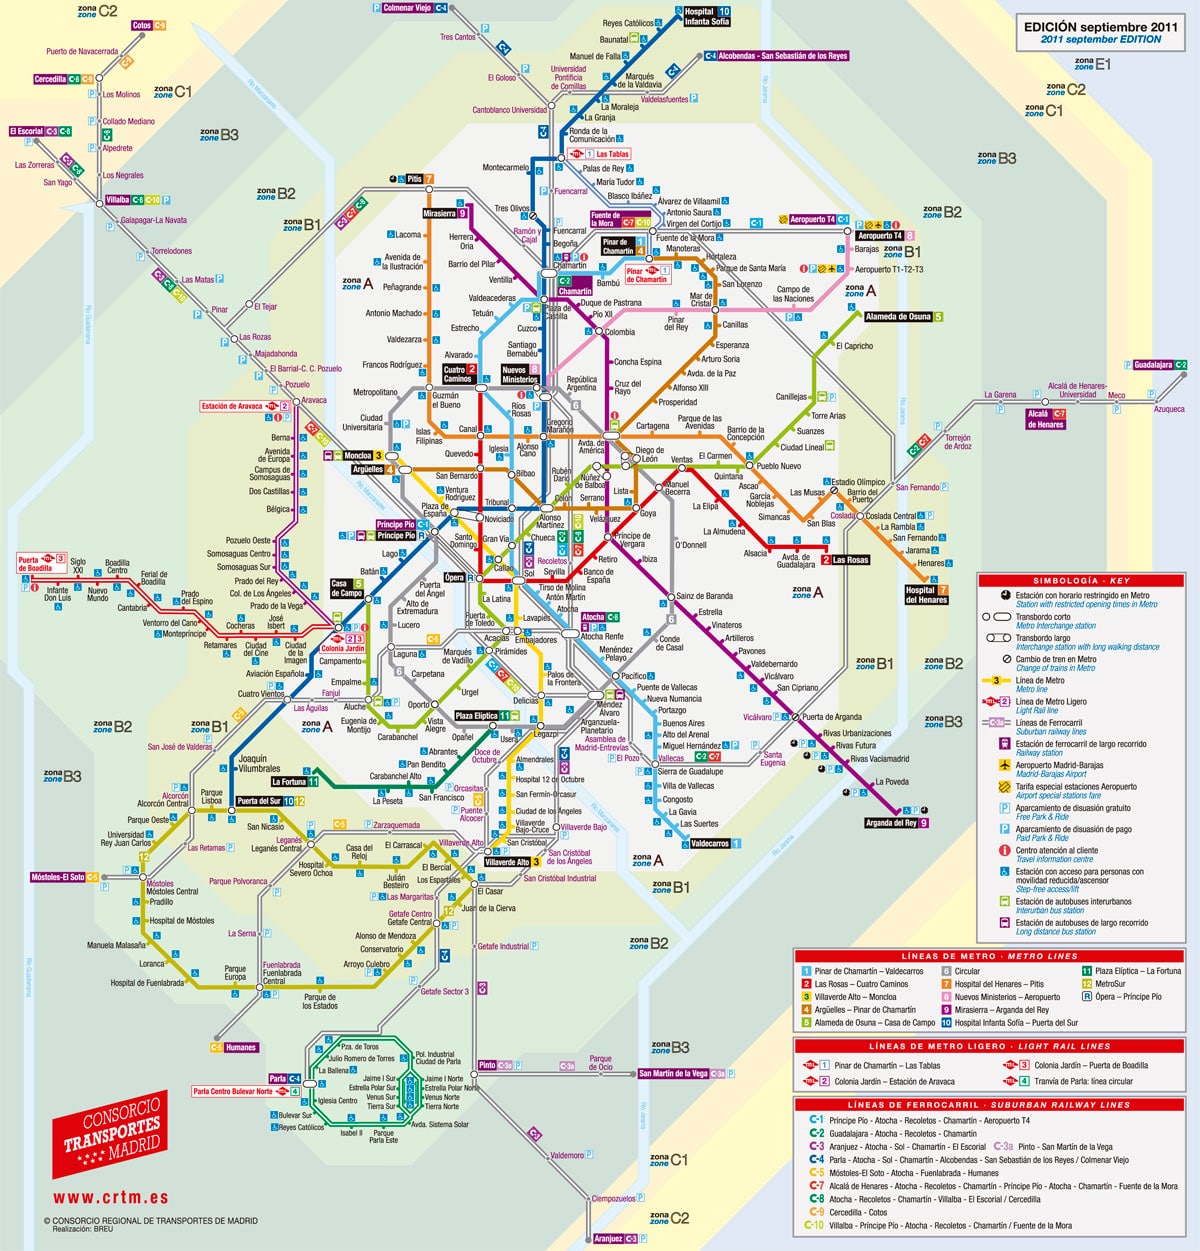 Mappa e piano dei trasporti di Madrid